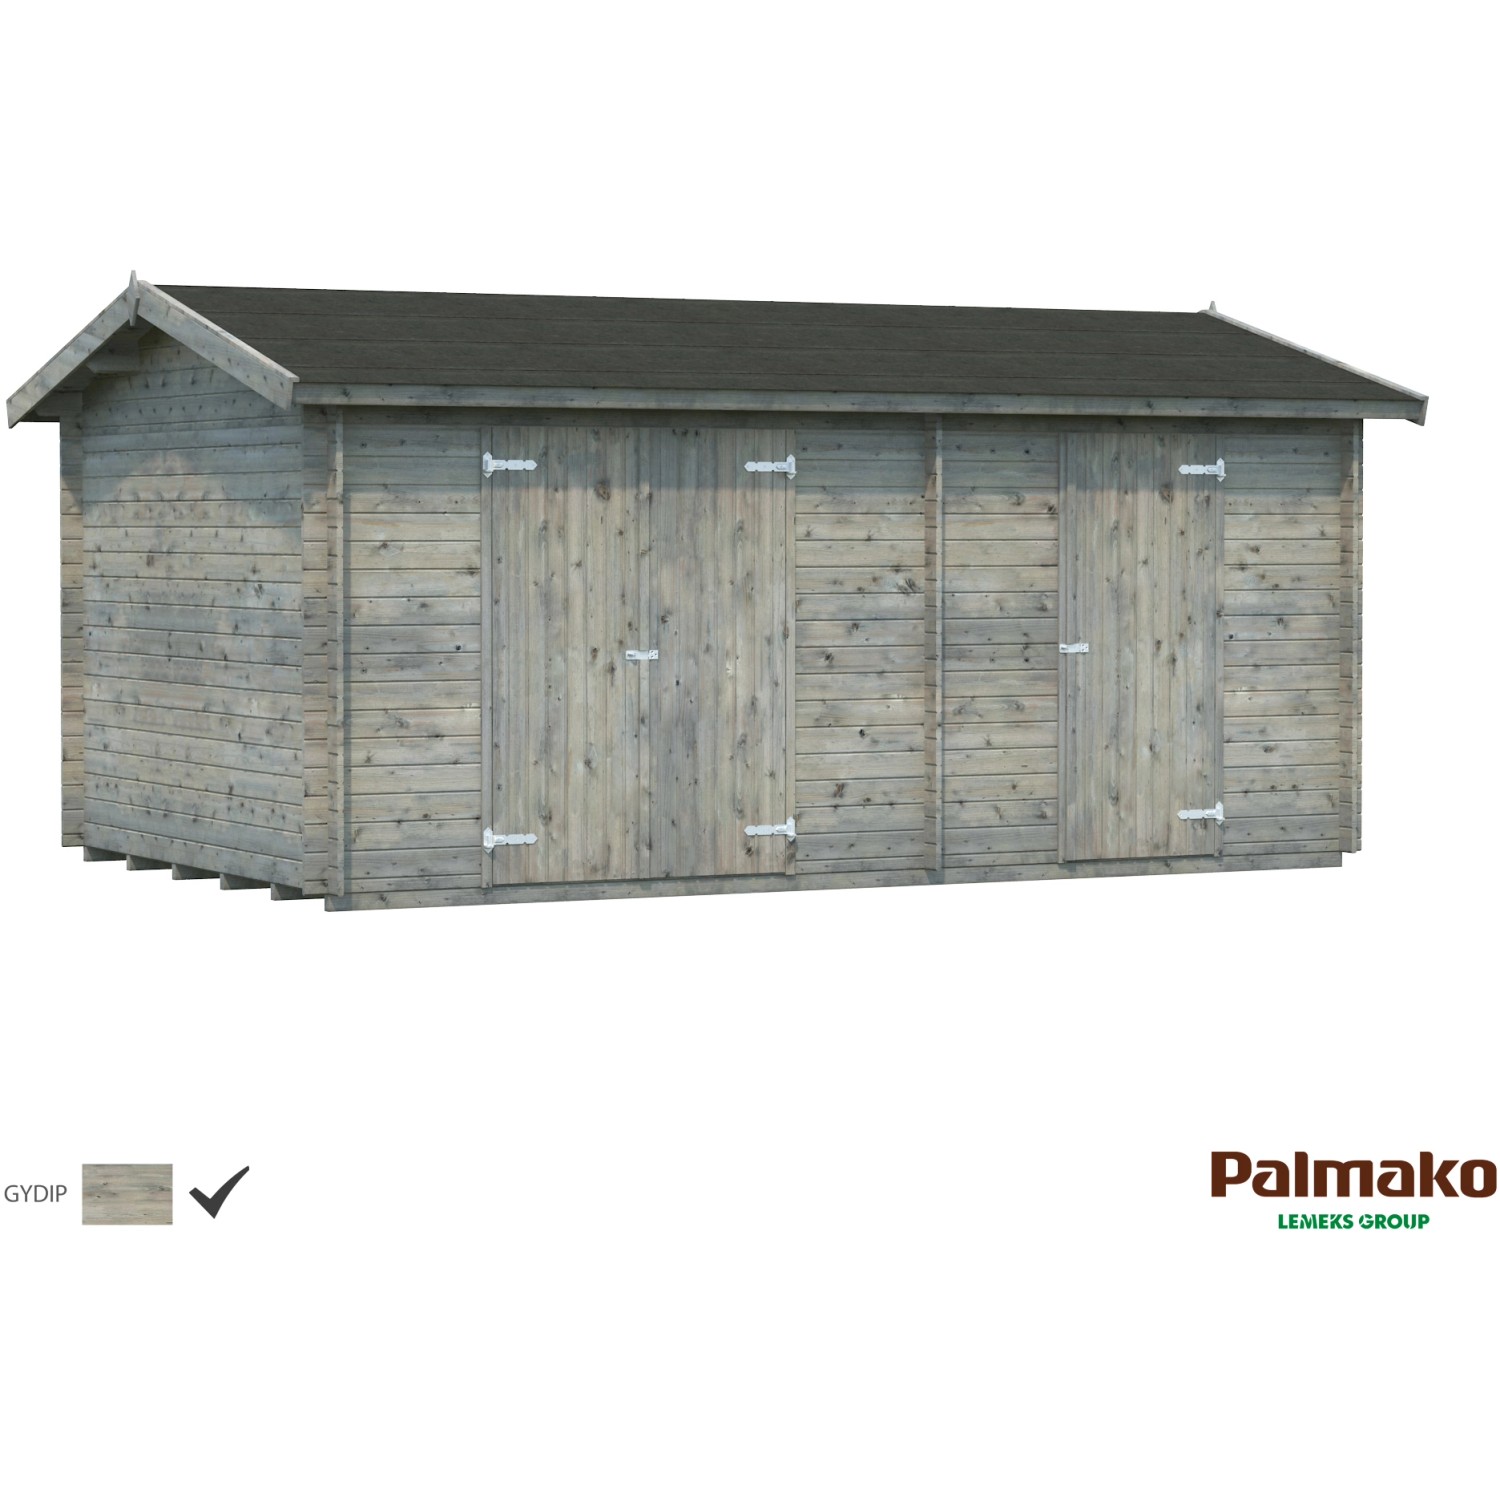 Palmako Jari Holz-Gartenhaus Grau Satteldach Tauchgrundiert 520 cm x 300 cm von Palmako